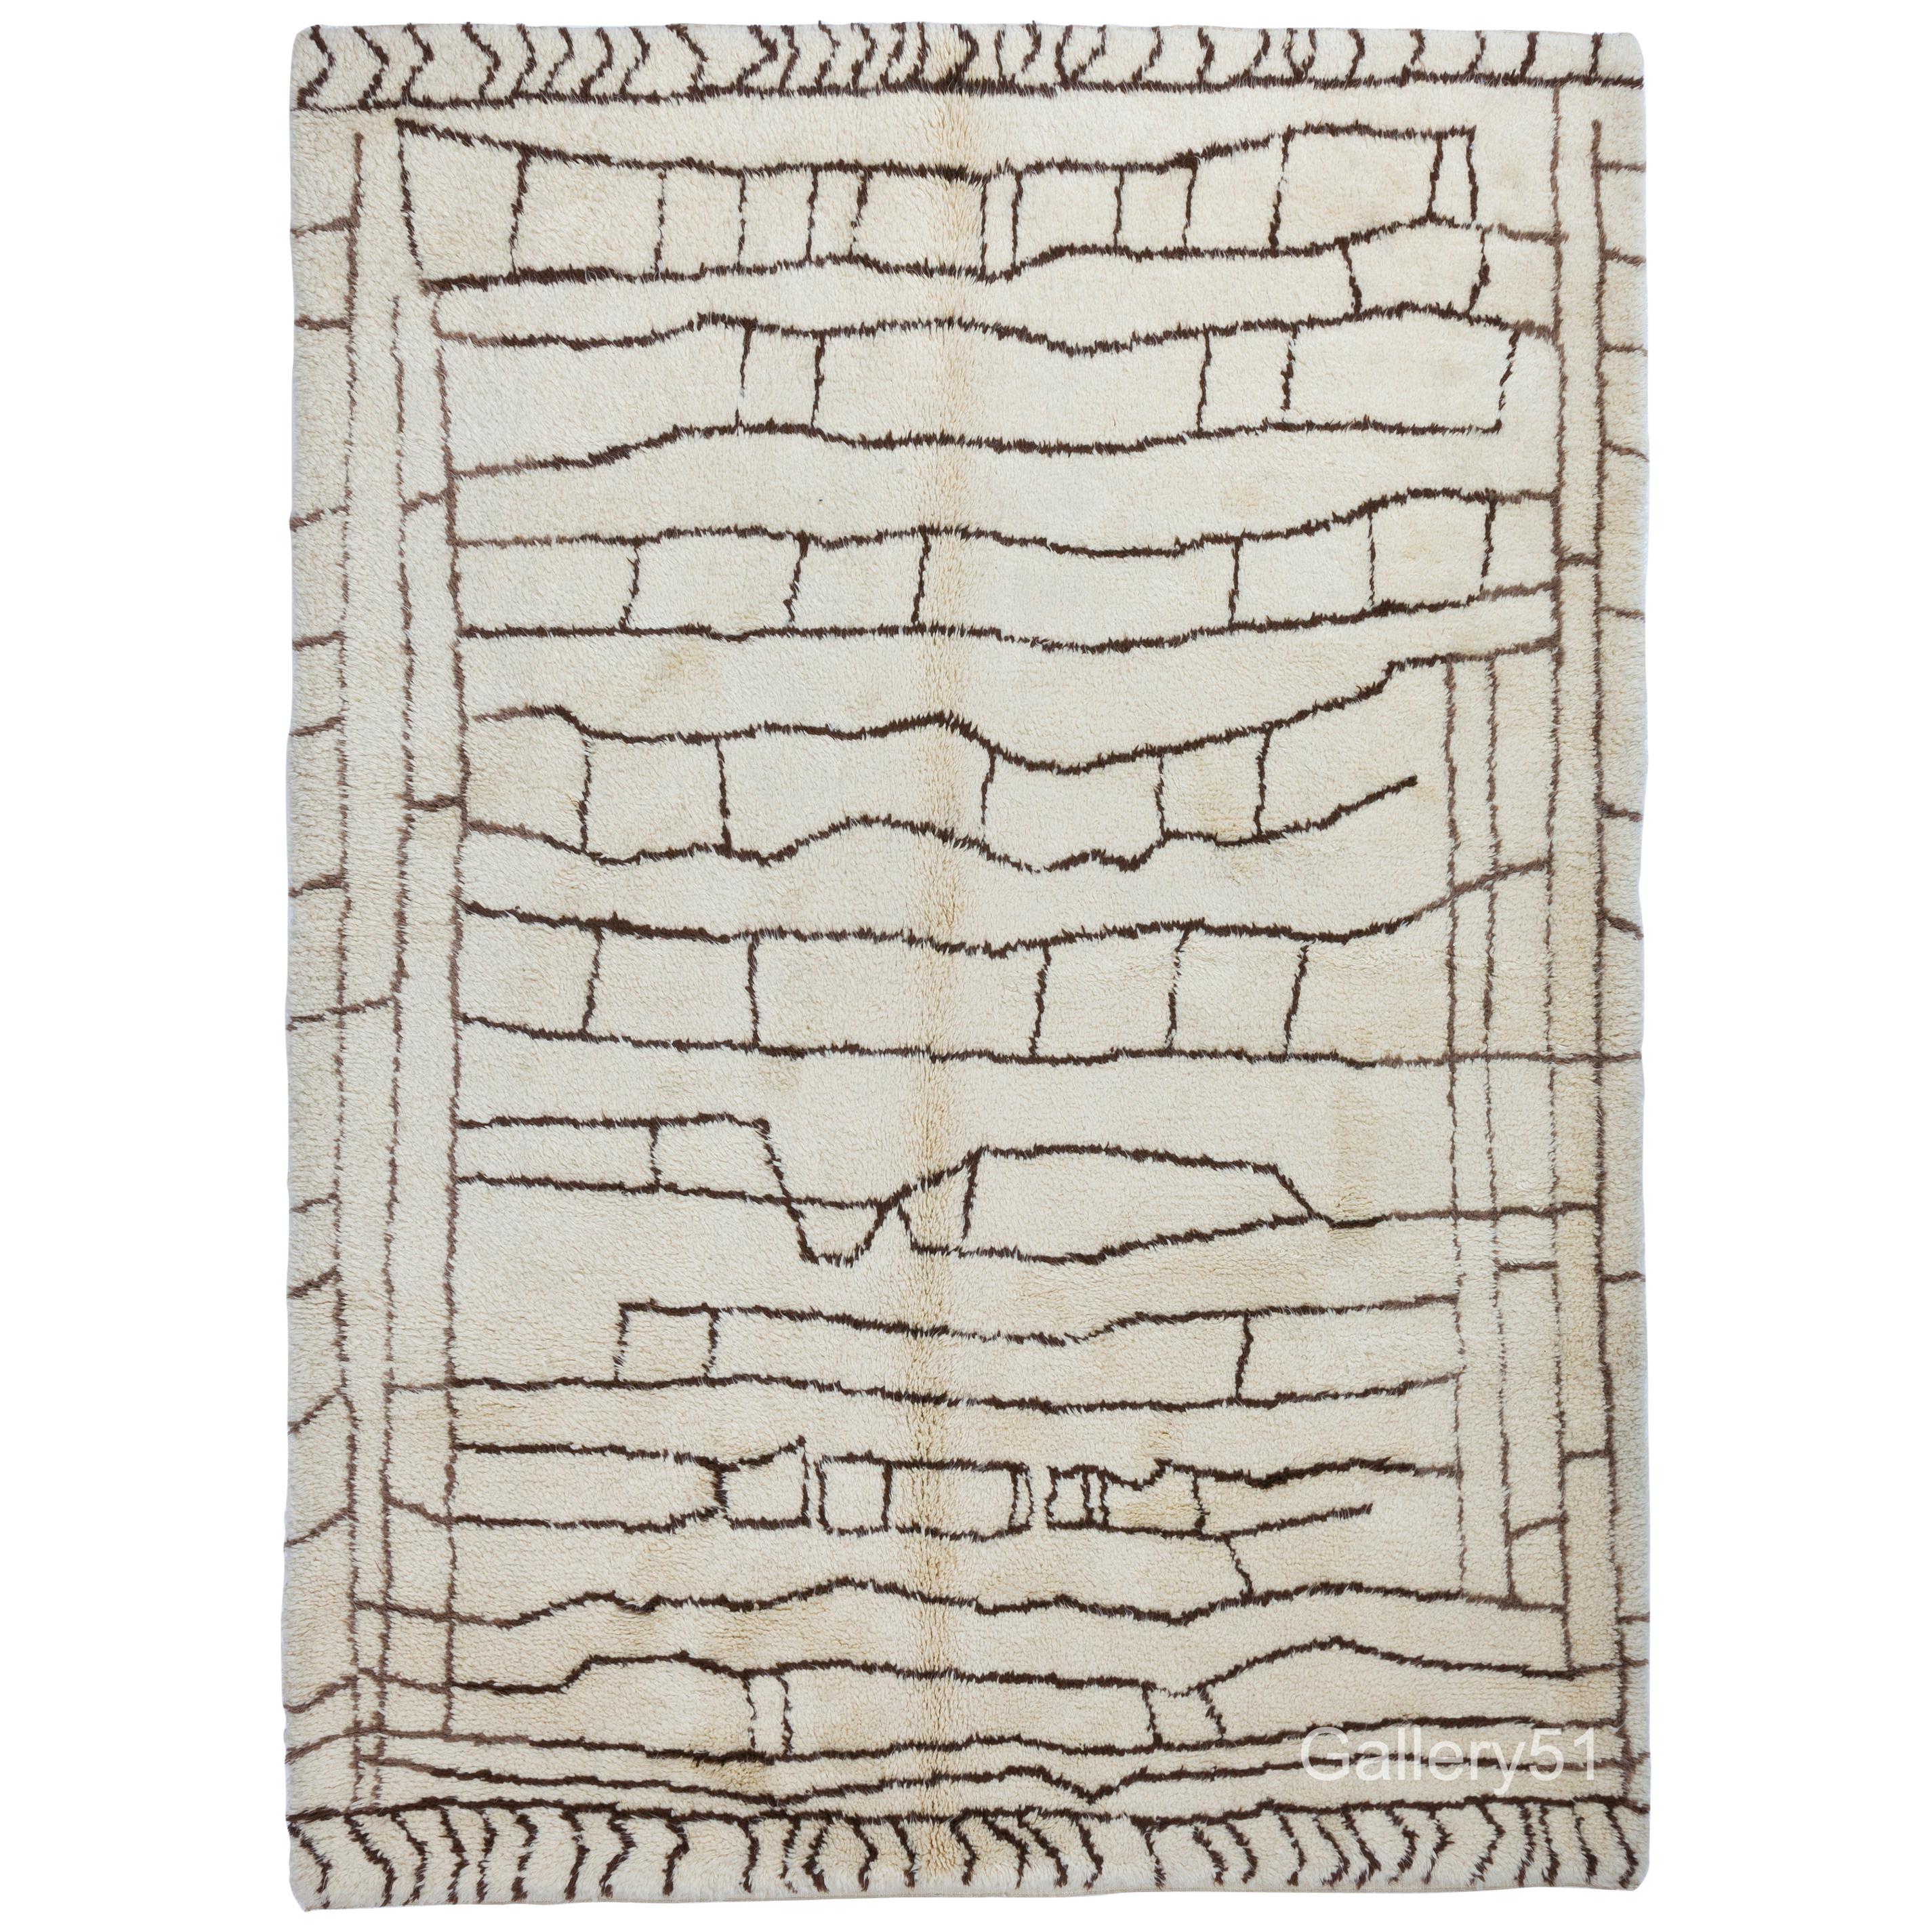 7.5x10 Ft Zeitgenössischer marokkanischer Beni Ourain-Teppich aus ungefärbter Naturwolle